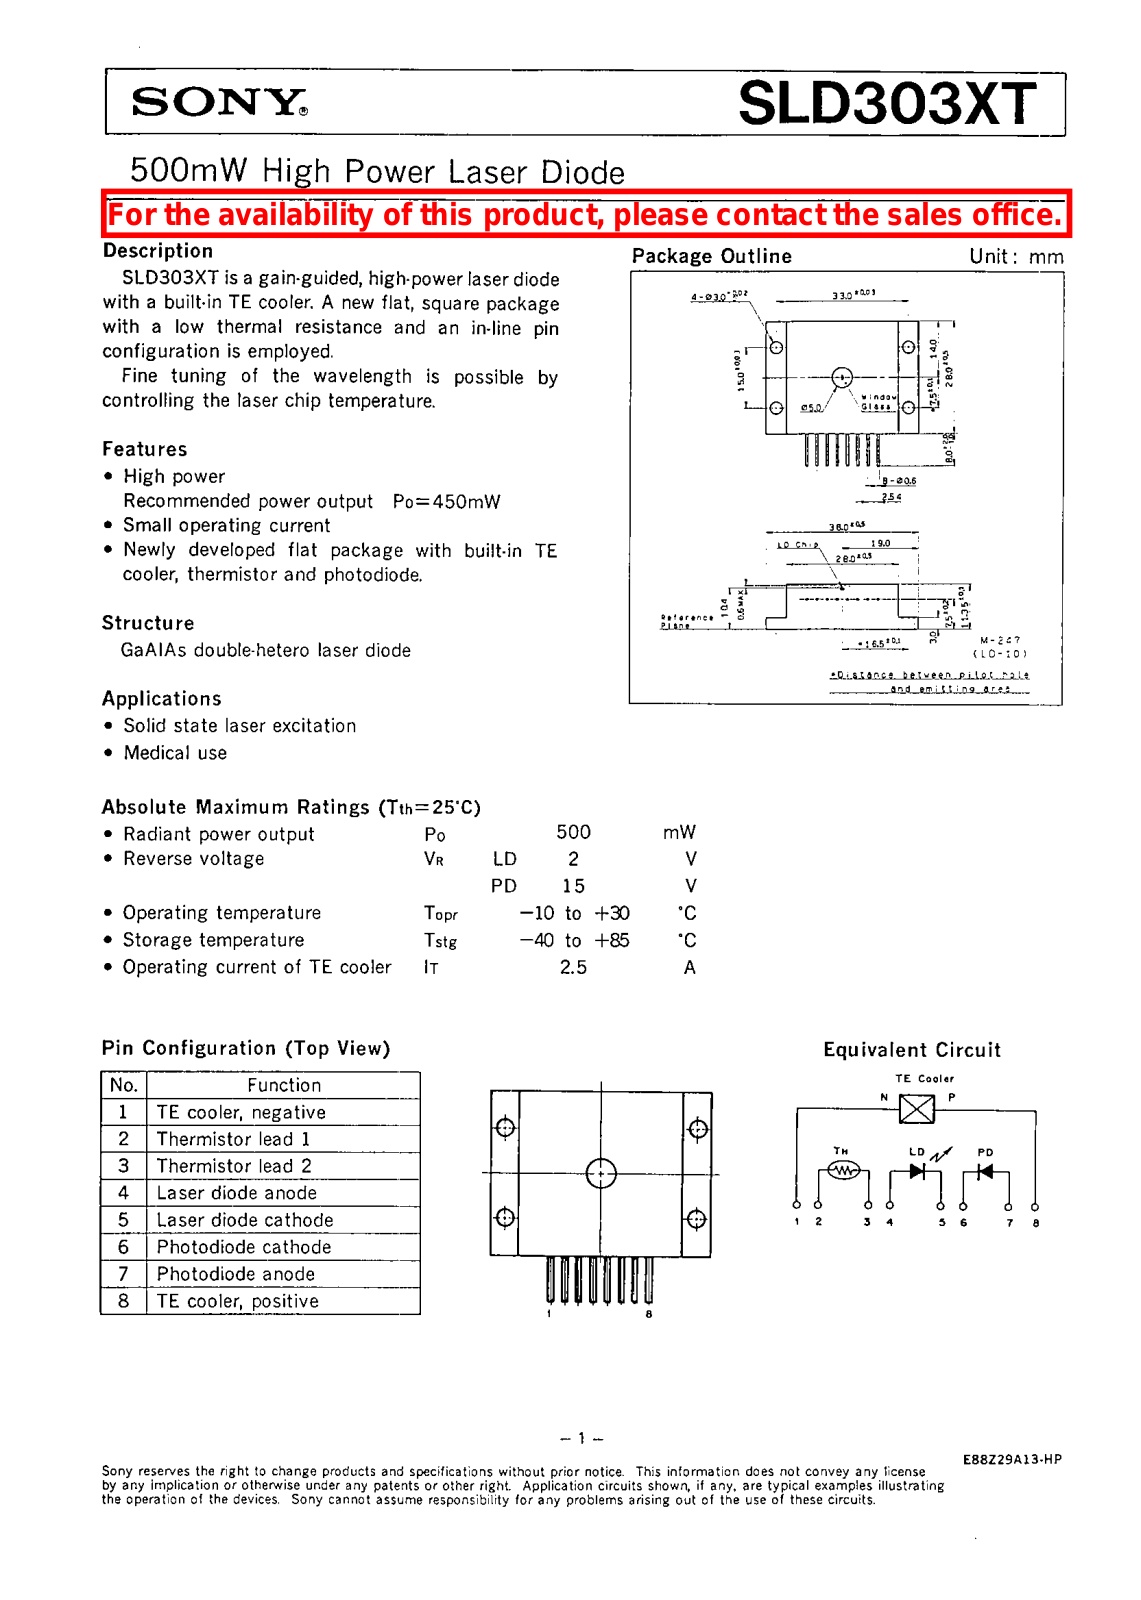 SONY SLD303XT User Manual